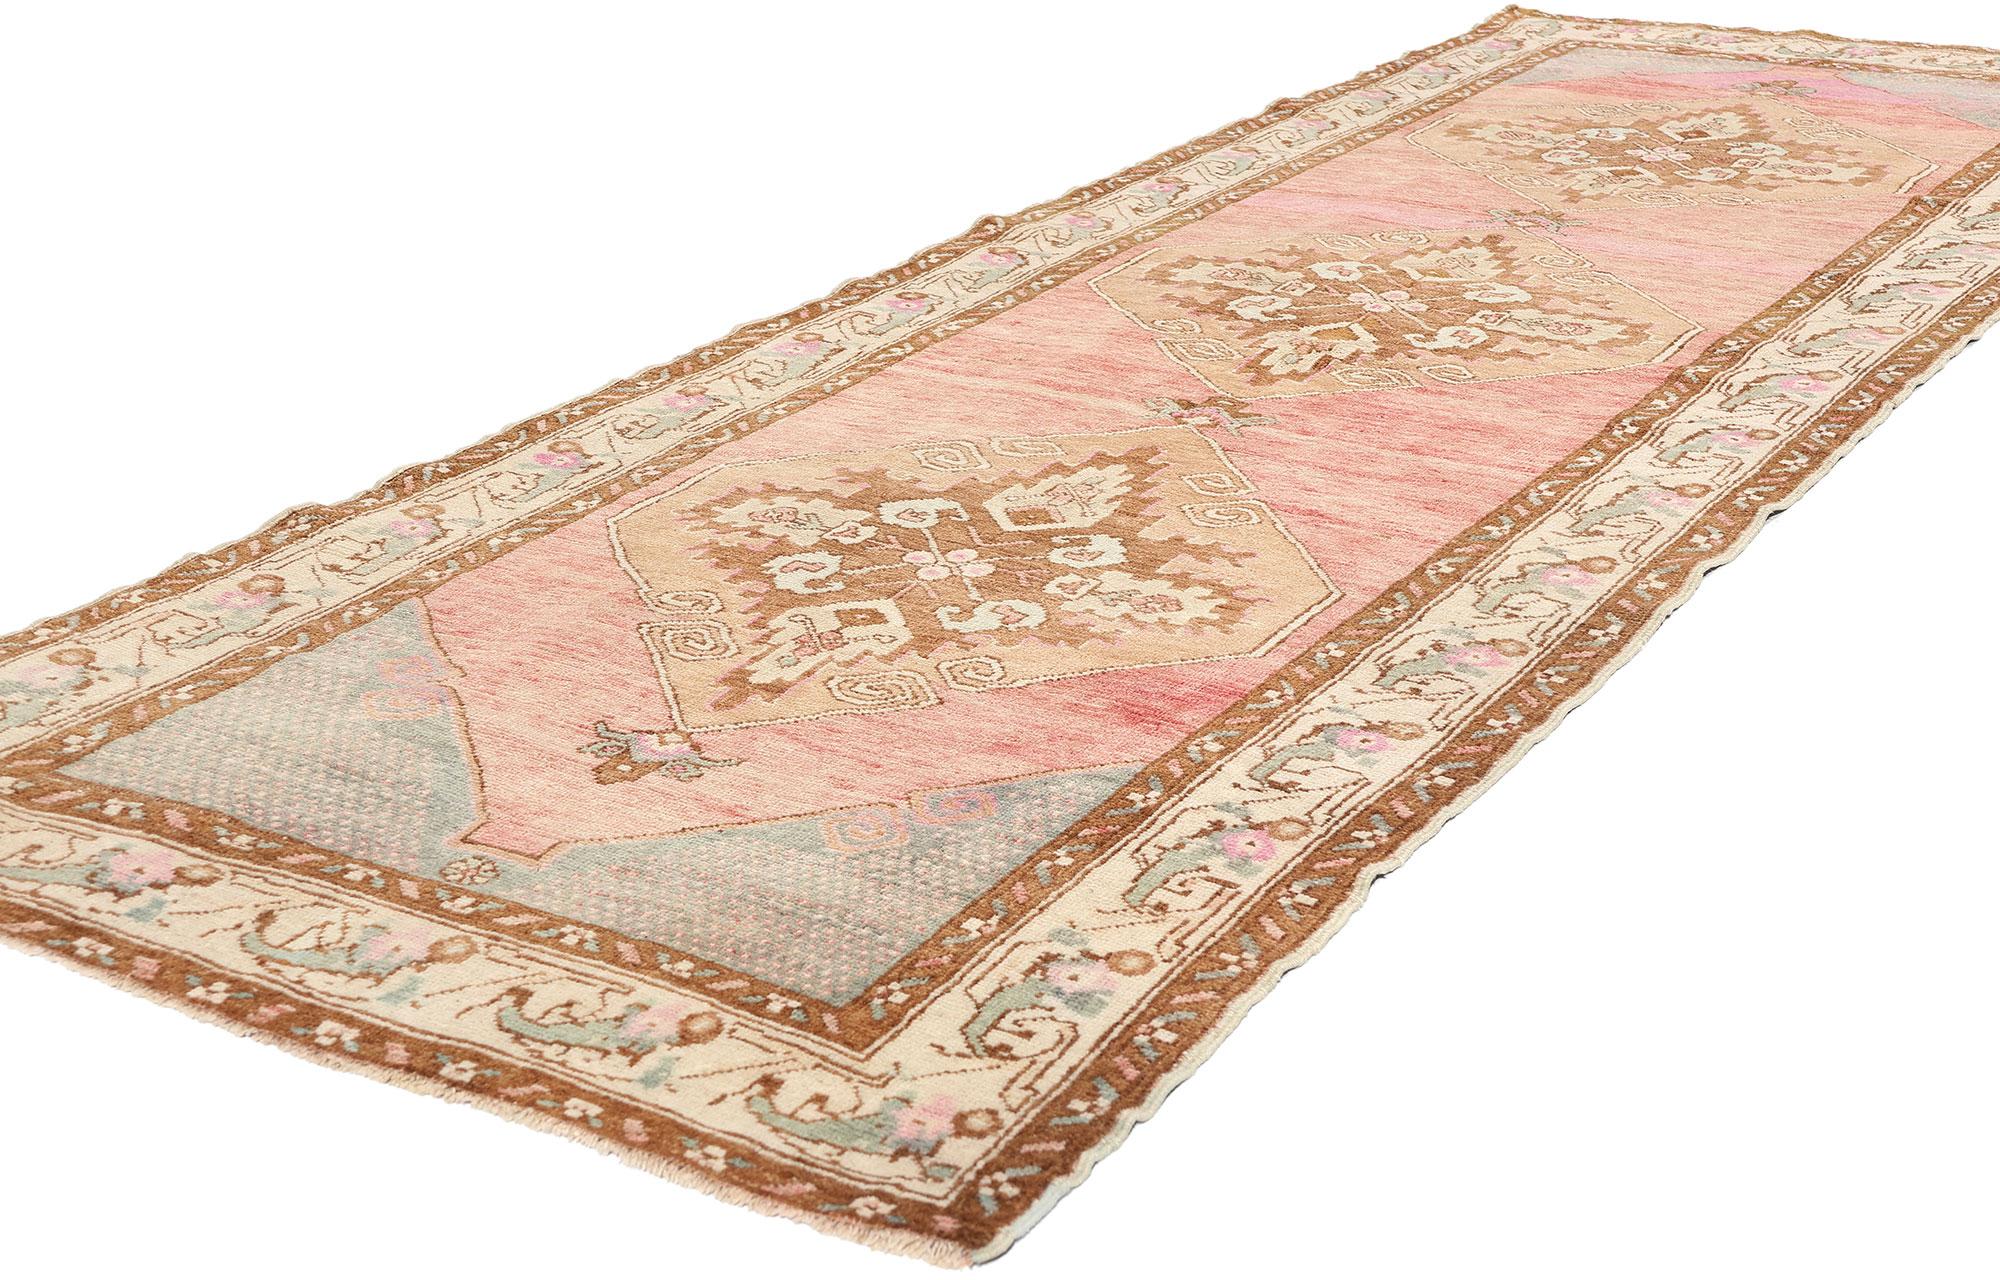 52805 Tapis turc Oushak Vintage Pink, 03'05 x 09'11. Les chemins de tapis turcs Oushak lavés à l'ancienne sont une variante des tapis traditionnels originaires de la région d'Oushak, dans l'ouest de la Turquie, qui subissent un processus de lavage